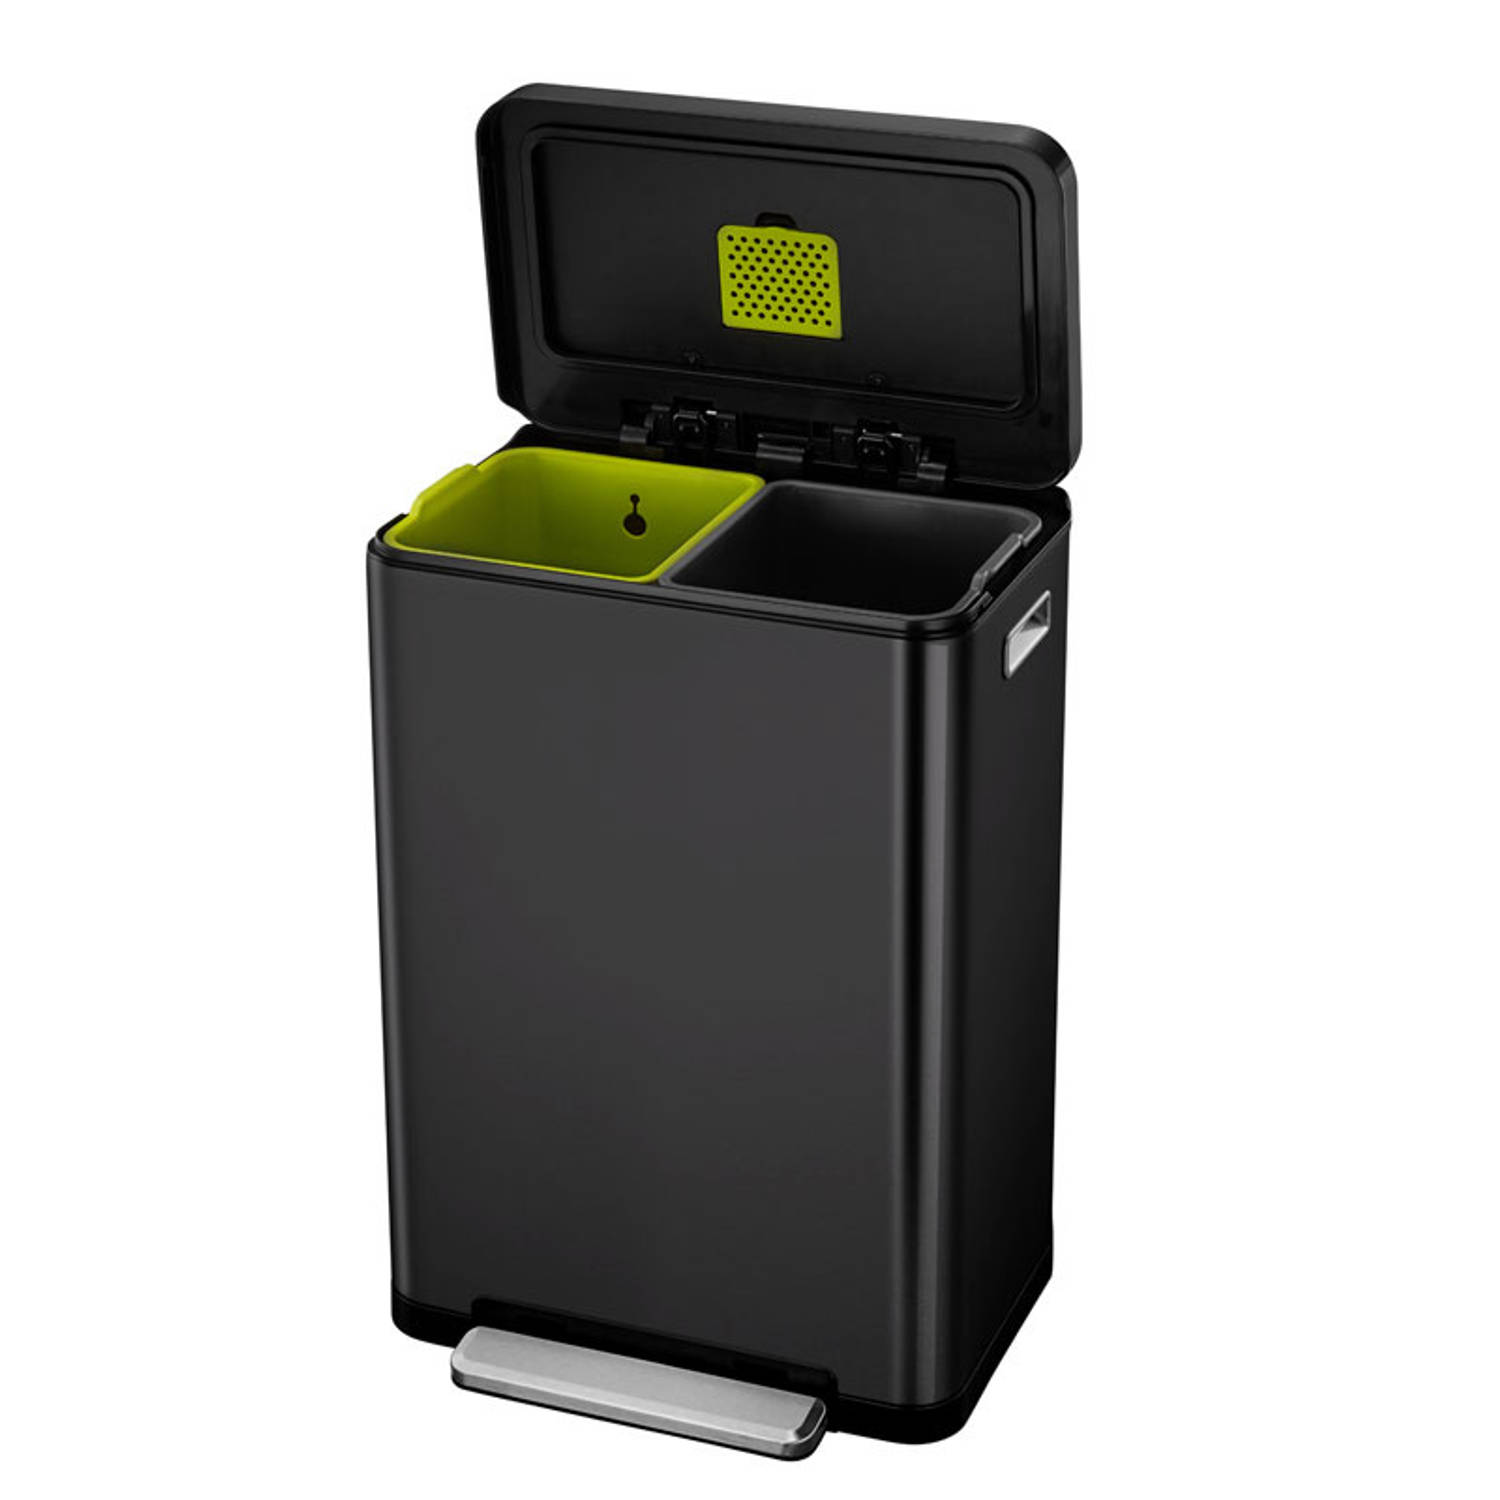 EKO pedaalemmer X-Cube afvalscheider liter RVS zwart | Blokker